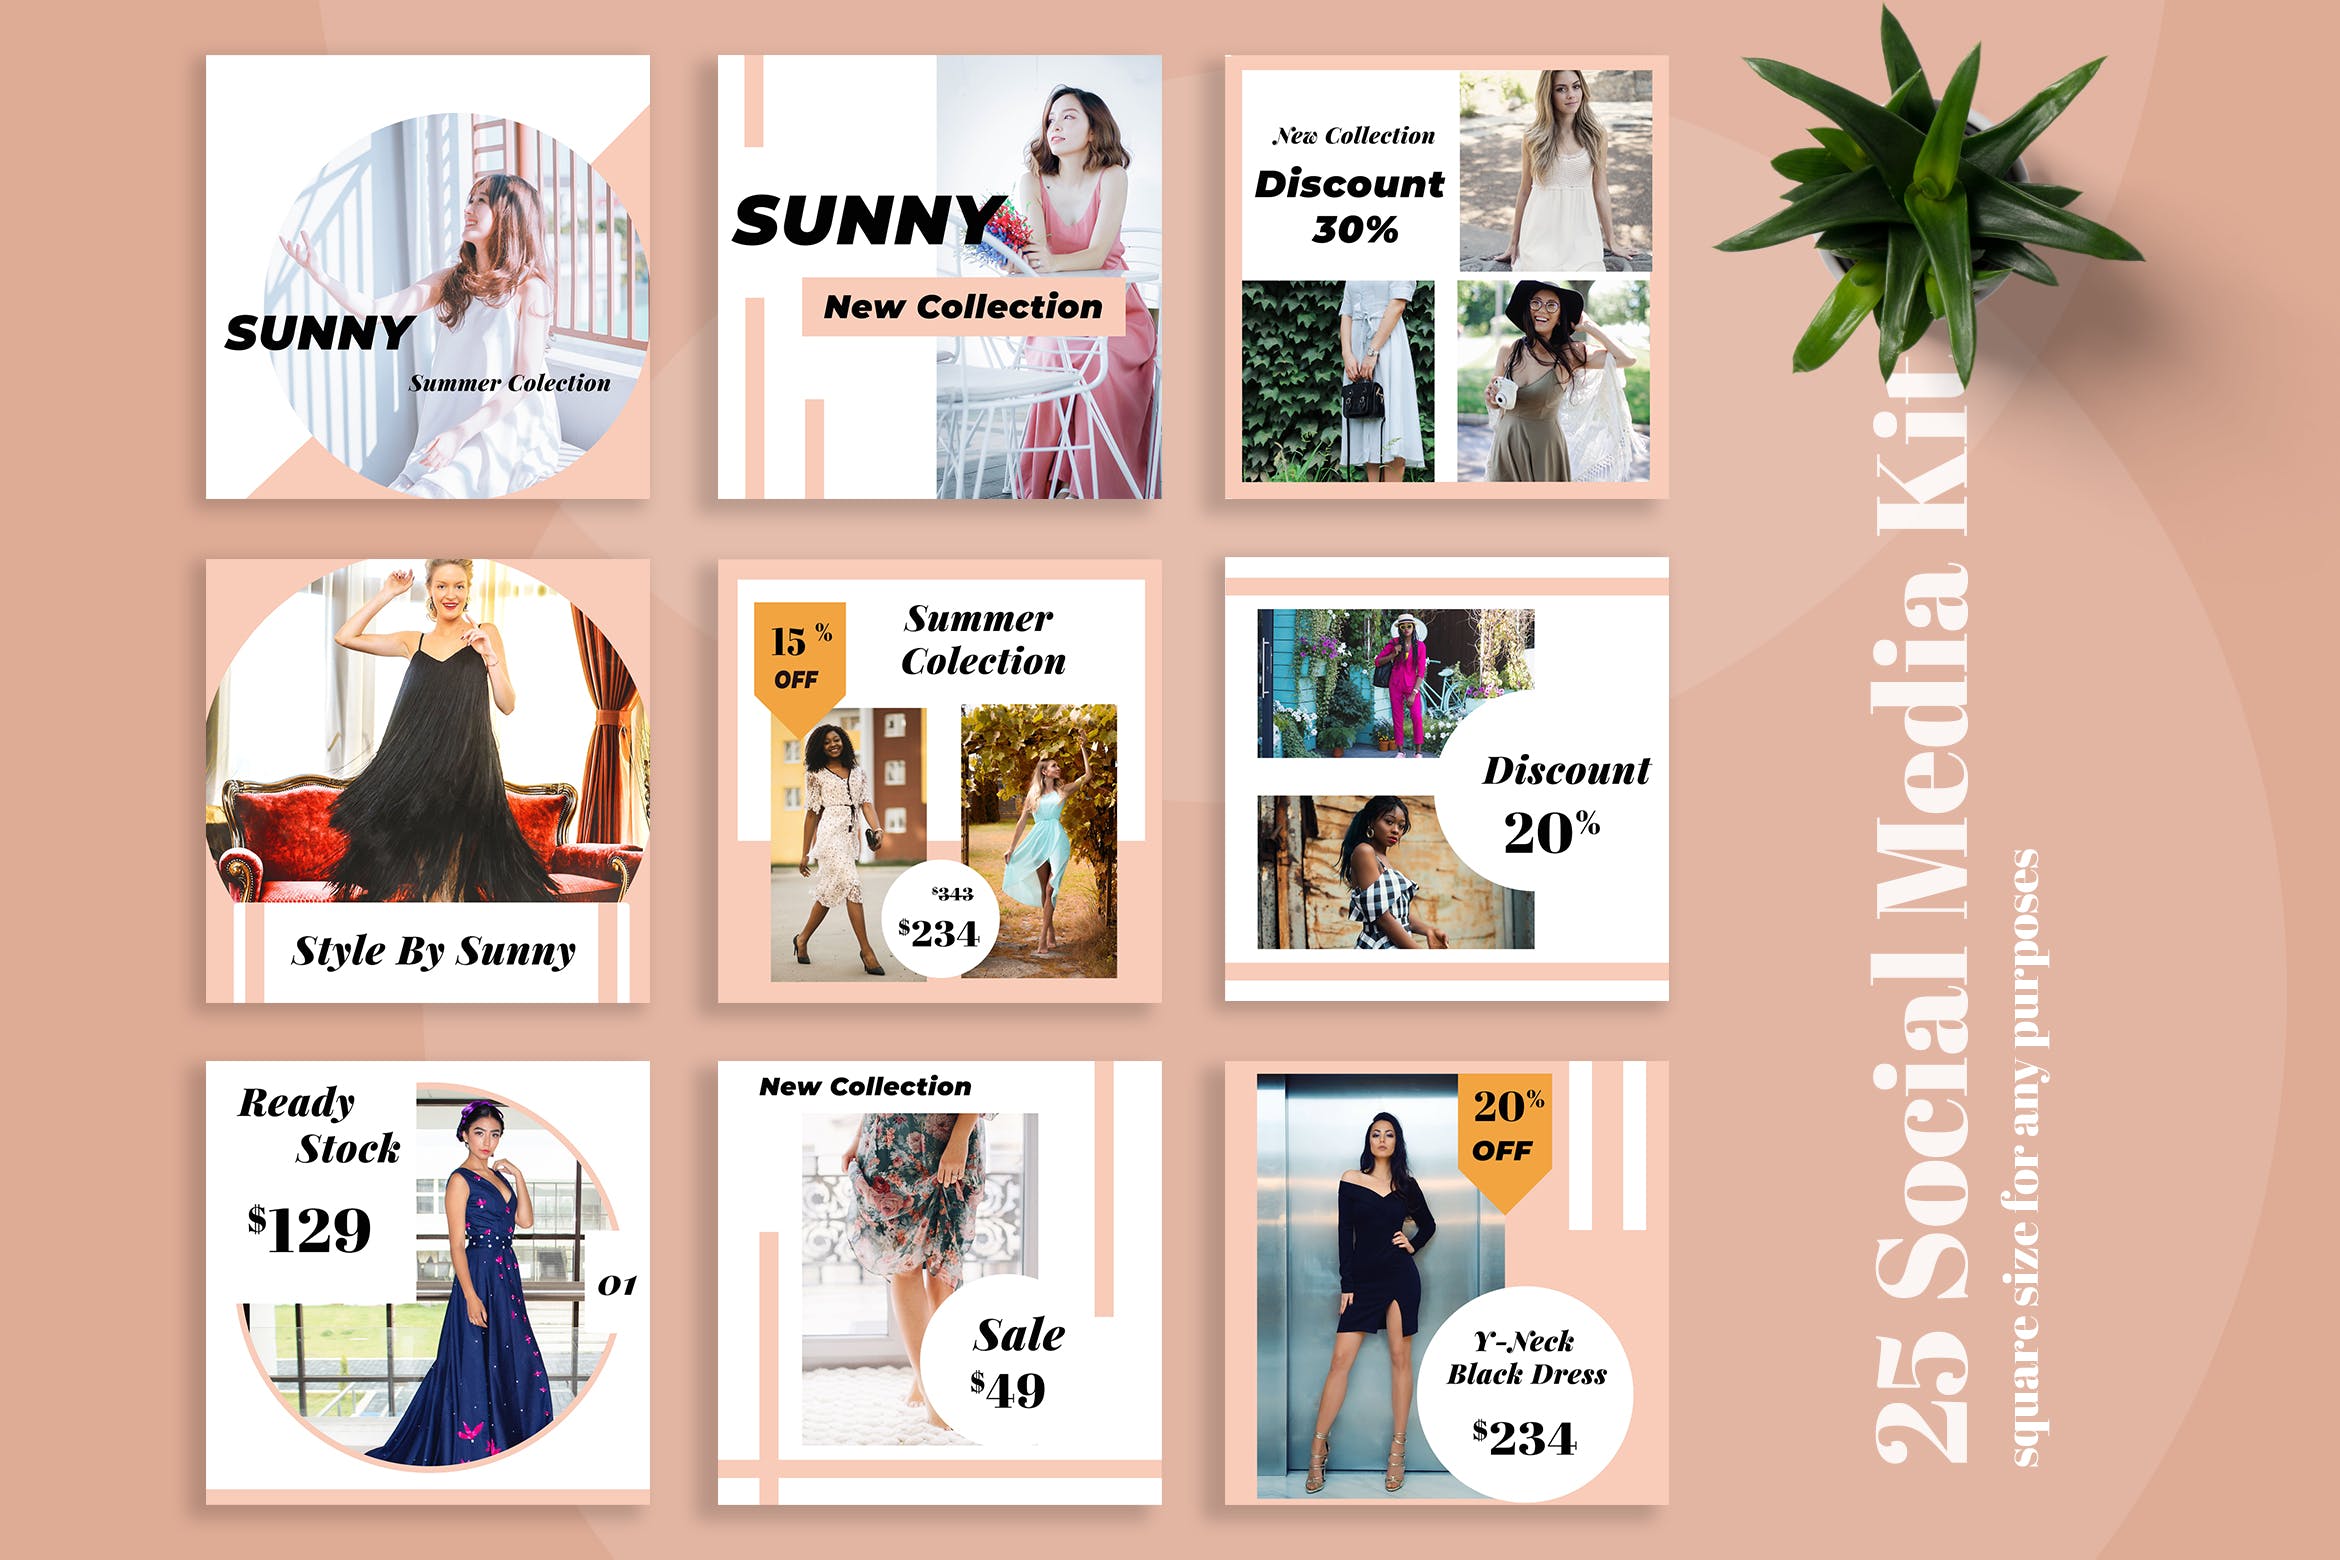 时尚服装社交促销广告设计模板第一素材精选 Sunny Social Media Kit插图